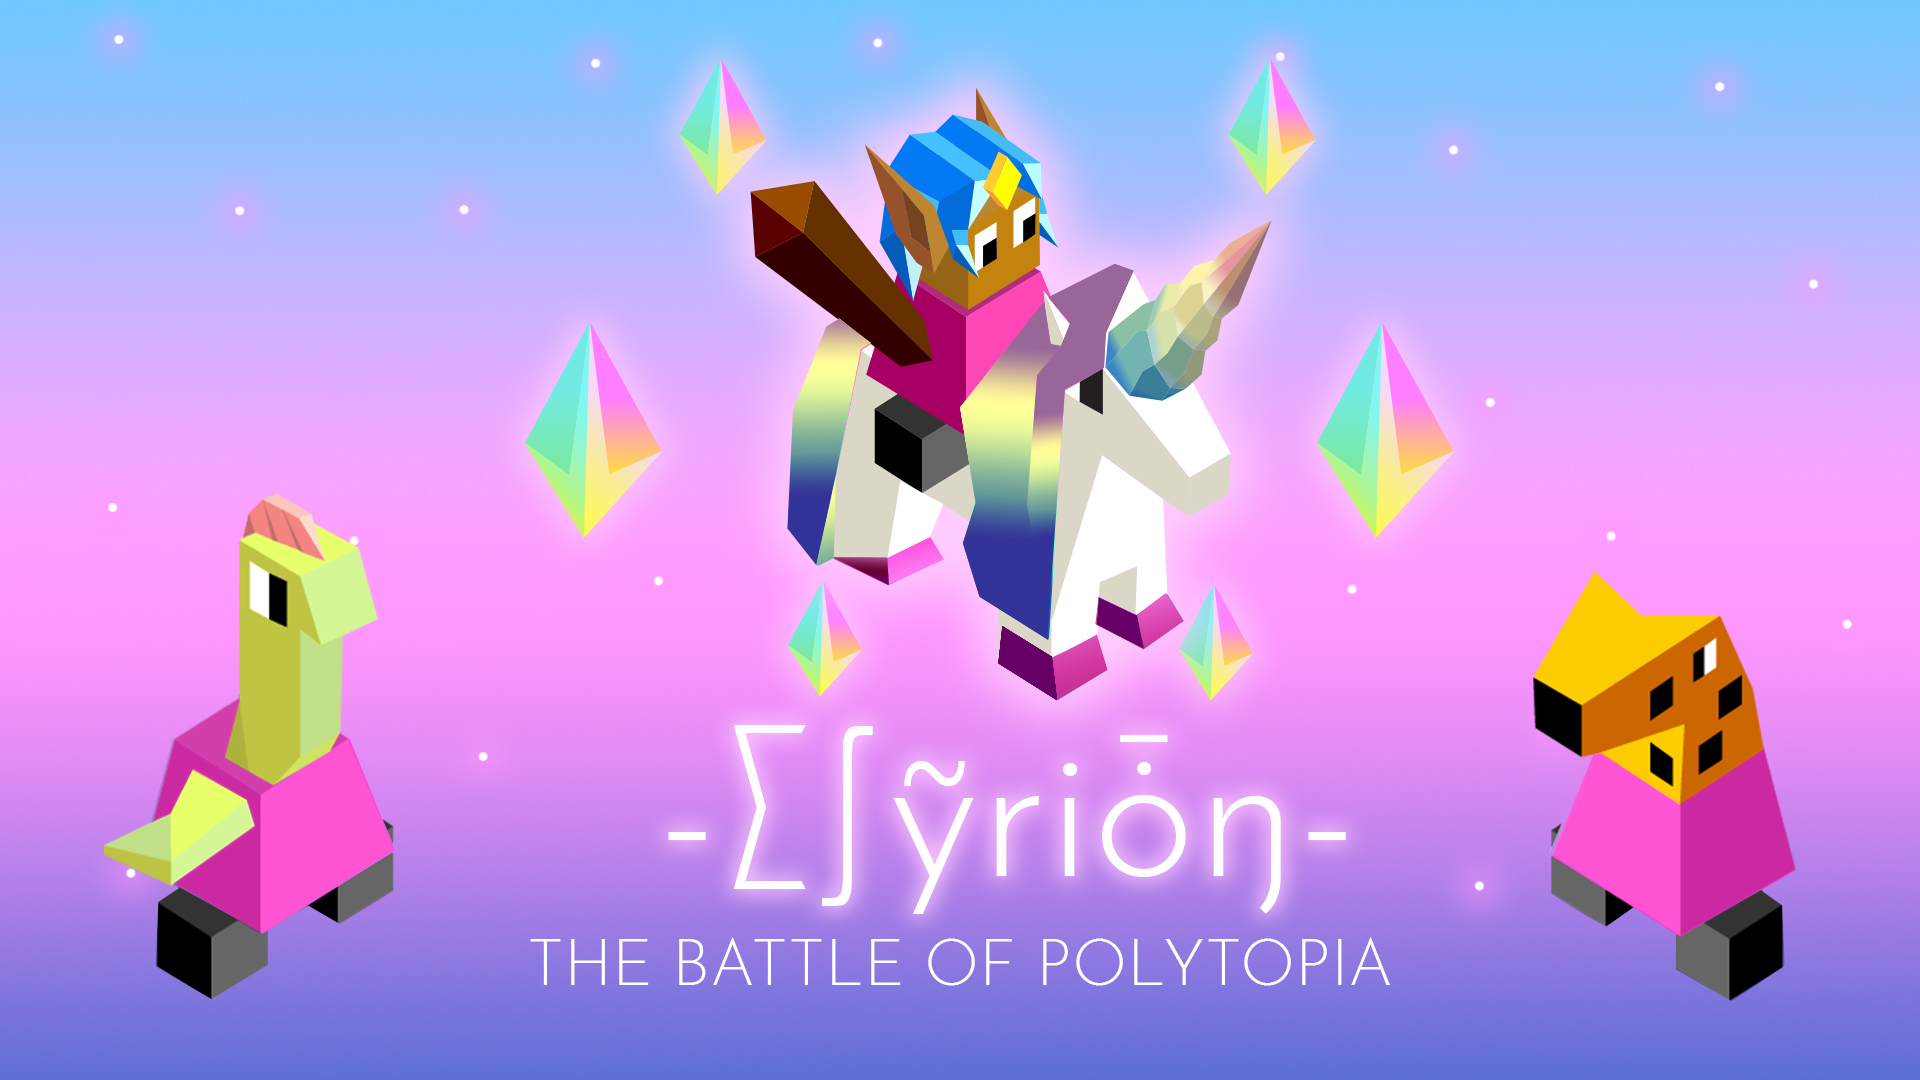 Elyrion